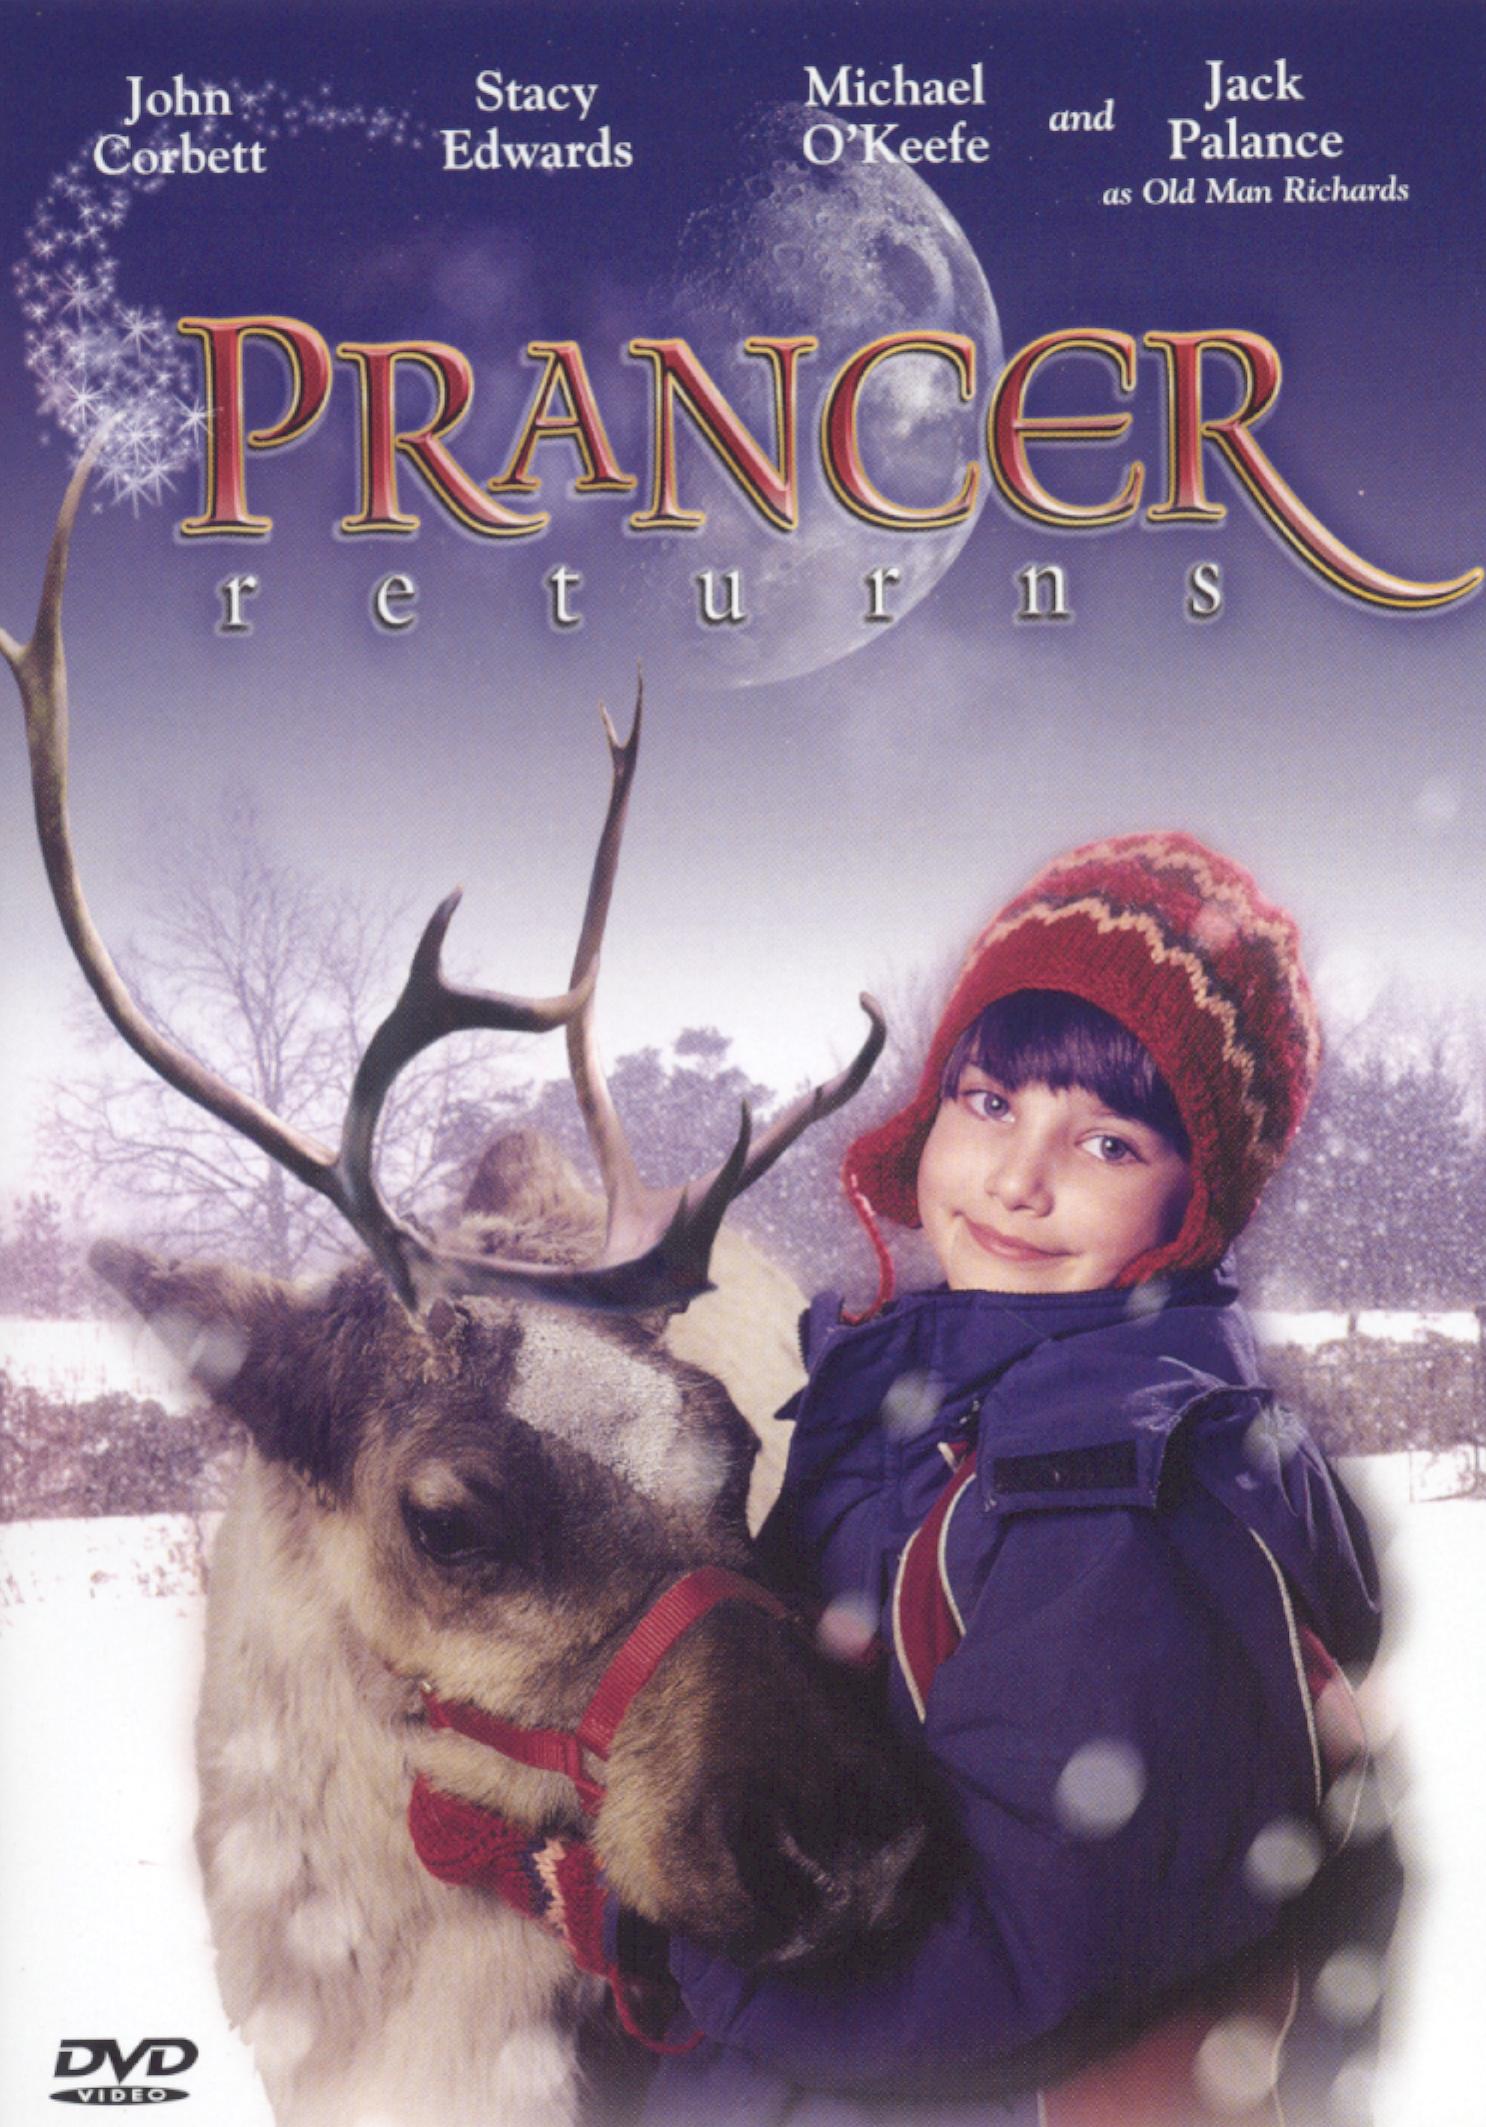 Prancer Returns cover art